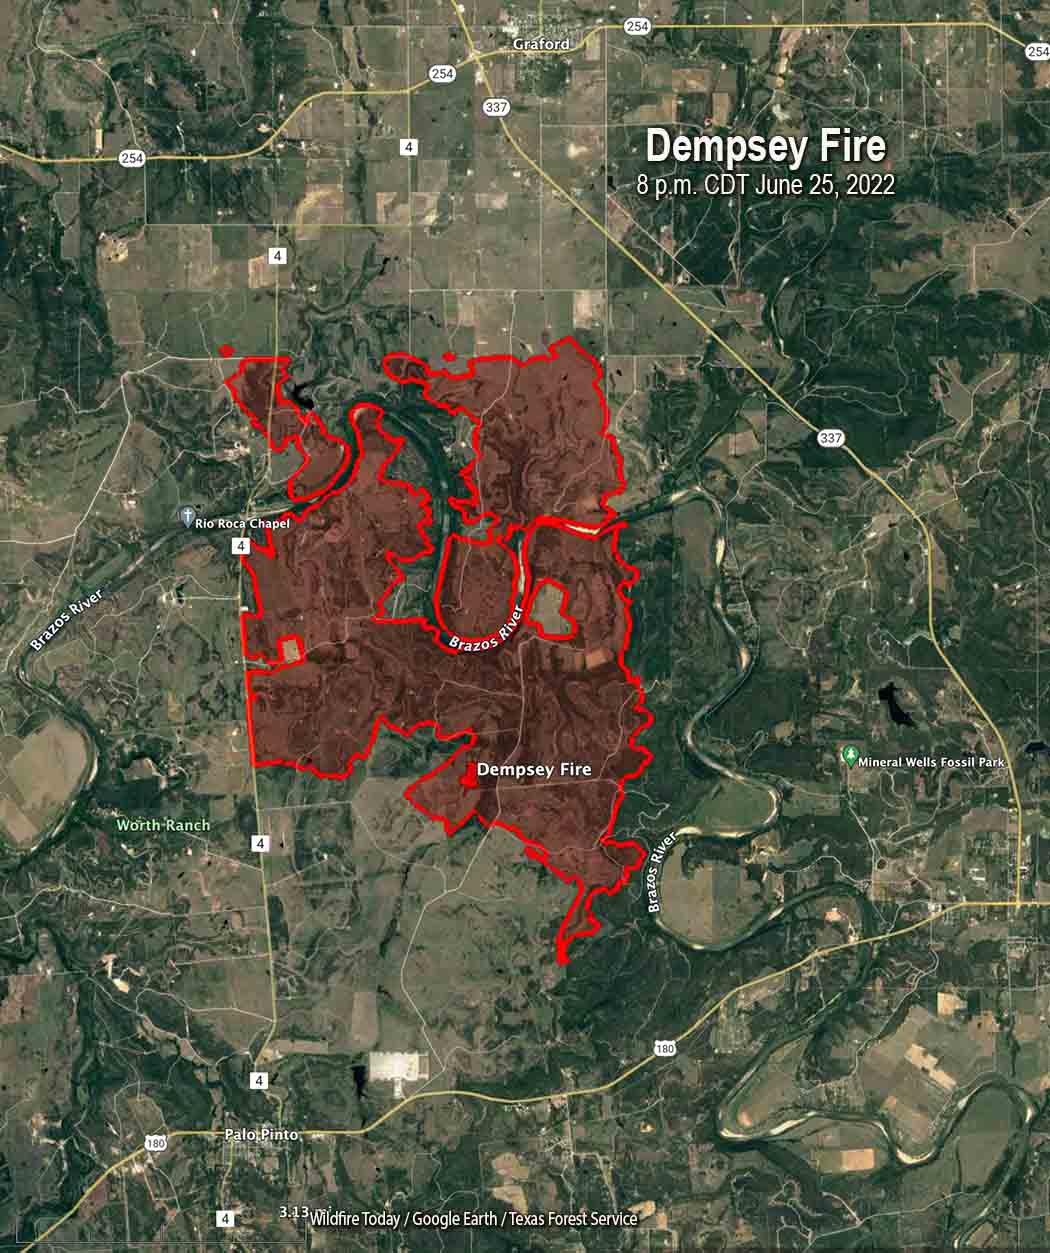 Dempsey Fire map, 8 p.m. CDT June 25, 2022